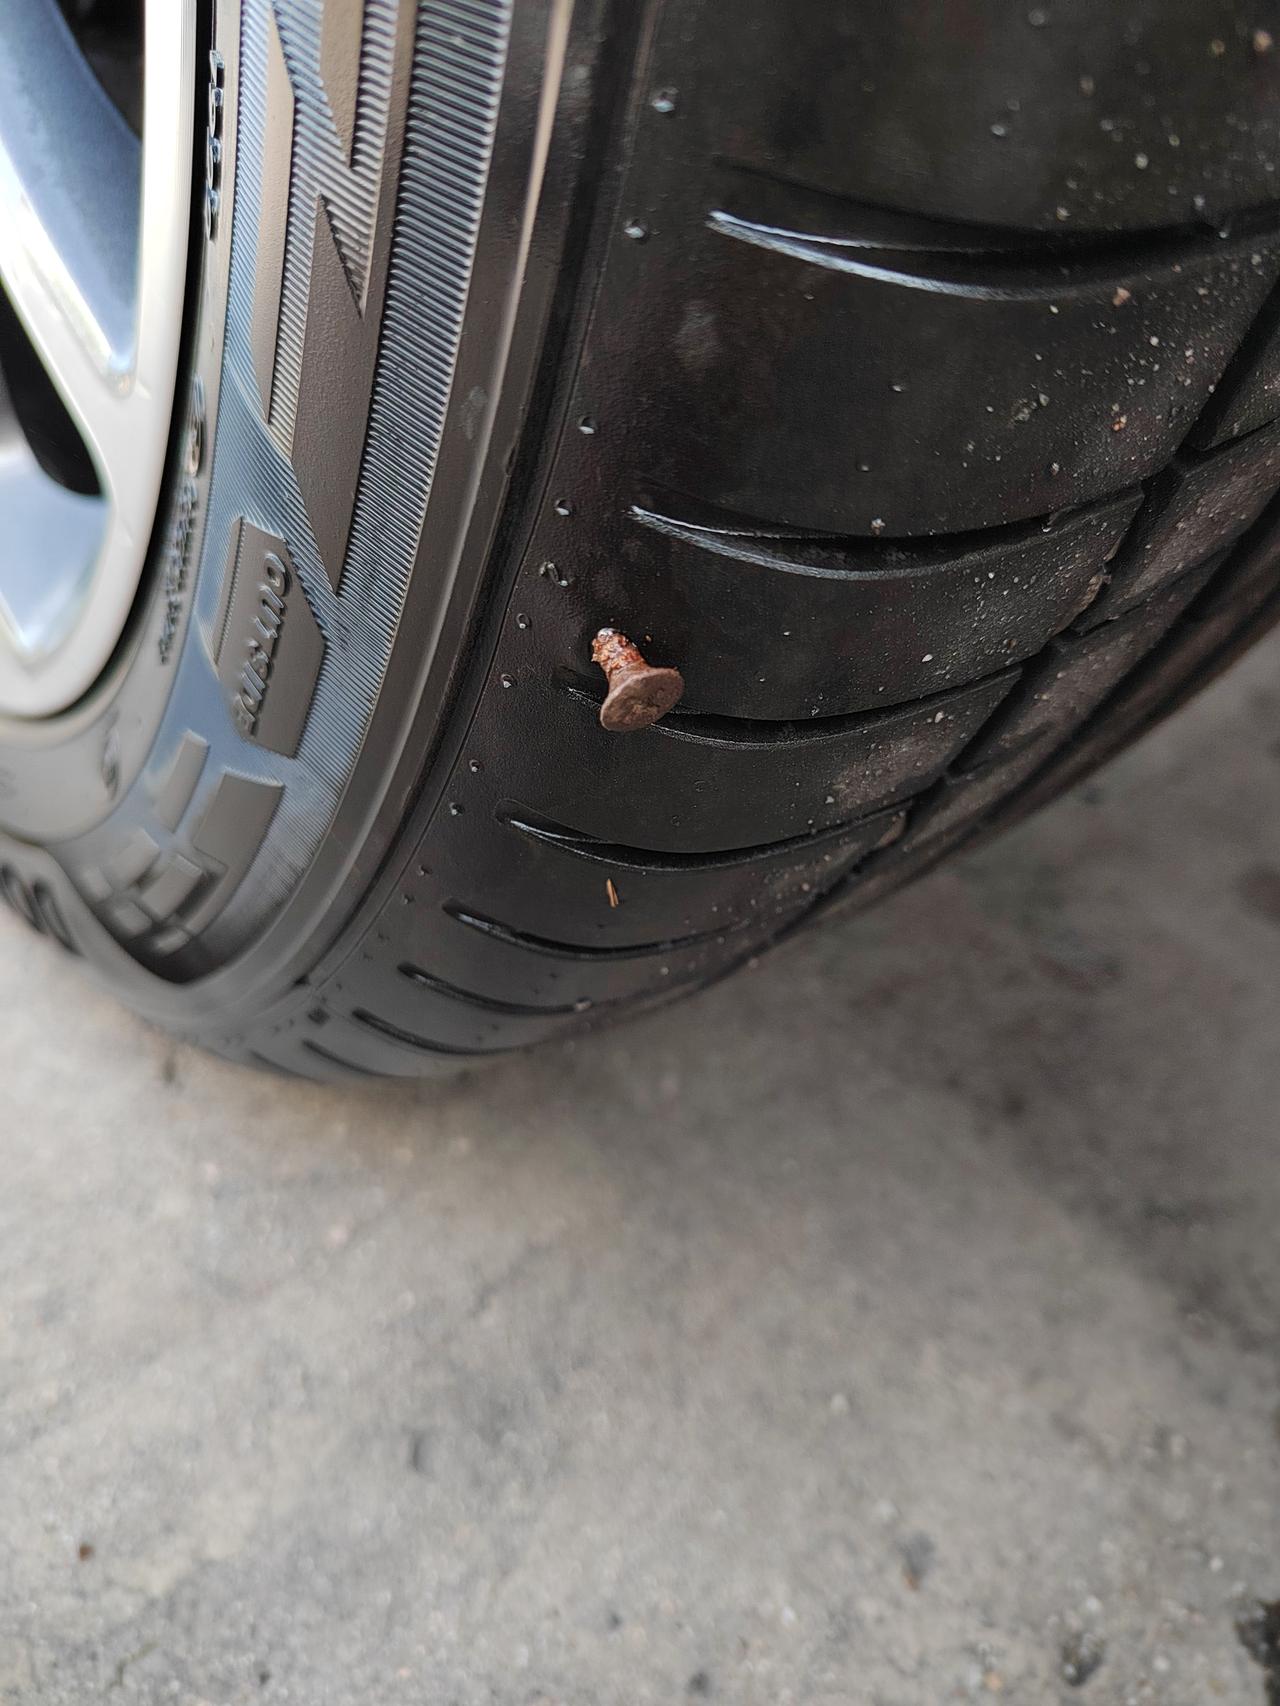 奇瑞艾瑞泽5 一个多月的新车，早上开门进去发现胎压报警，下来一看轮胎胎壁扎了一颗螺丝钉，问了问同事，都说这样的不能补